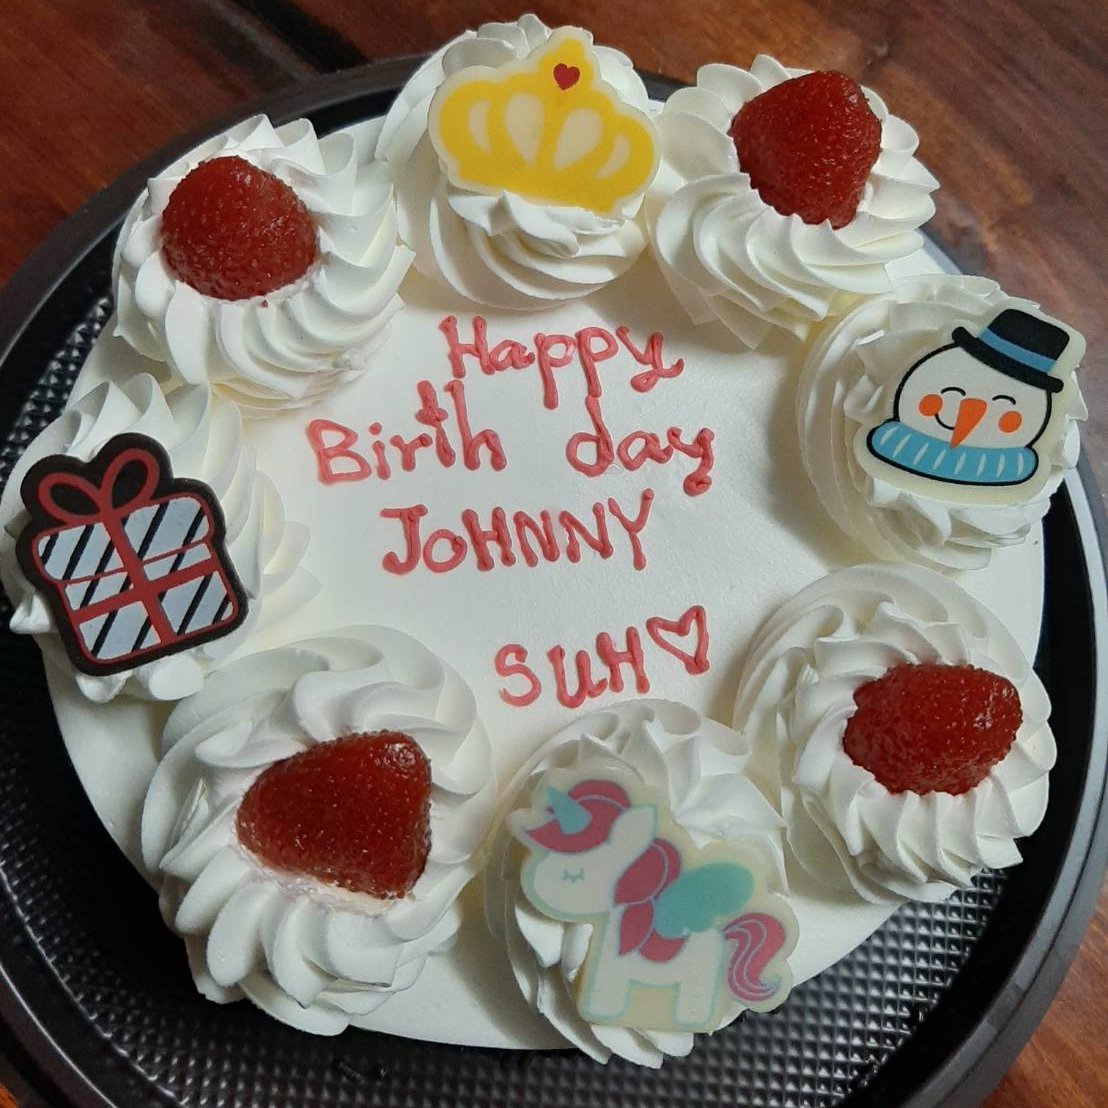  Happy bearly birthday Johnny 
Love you 